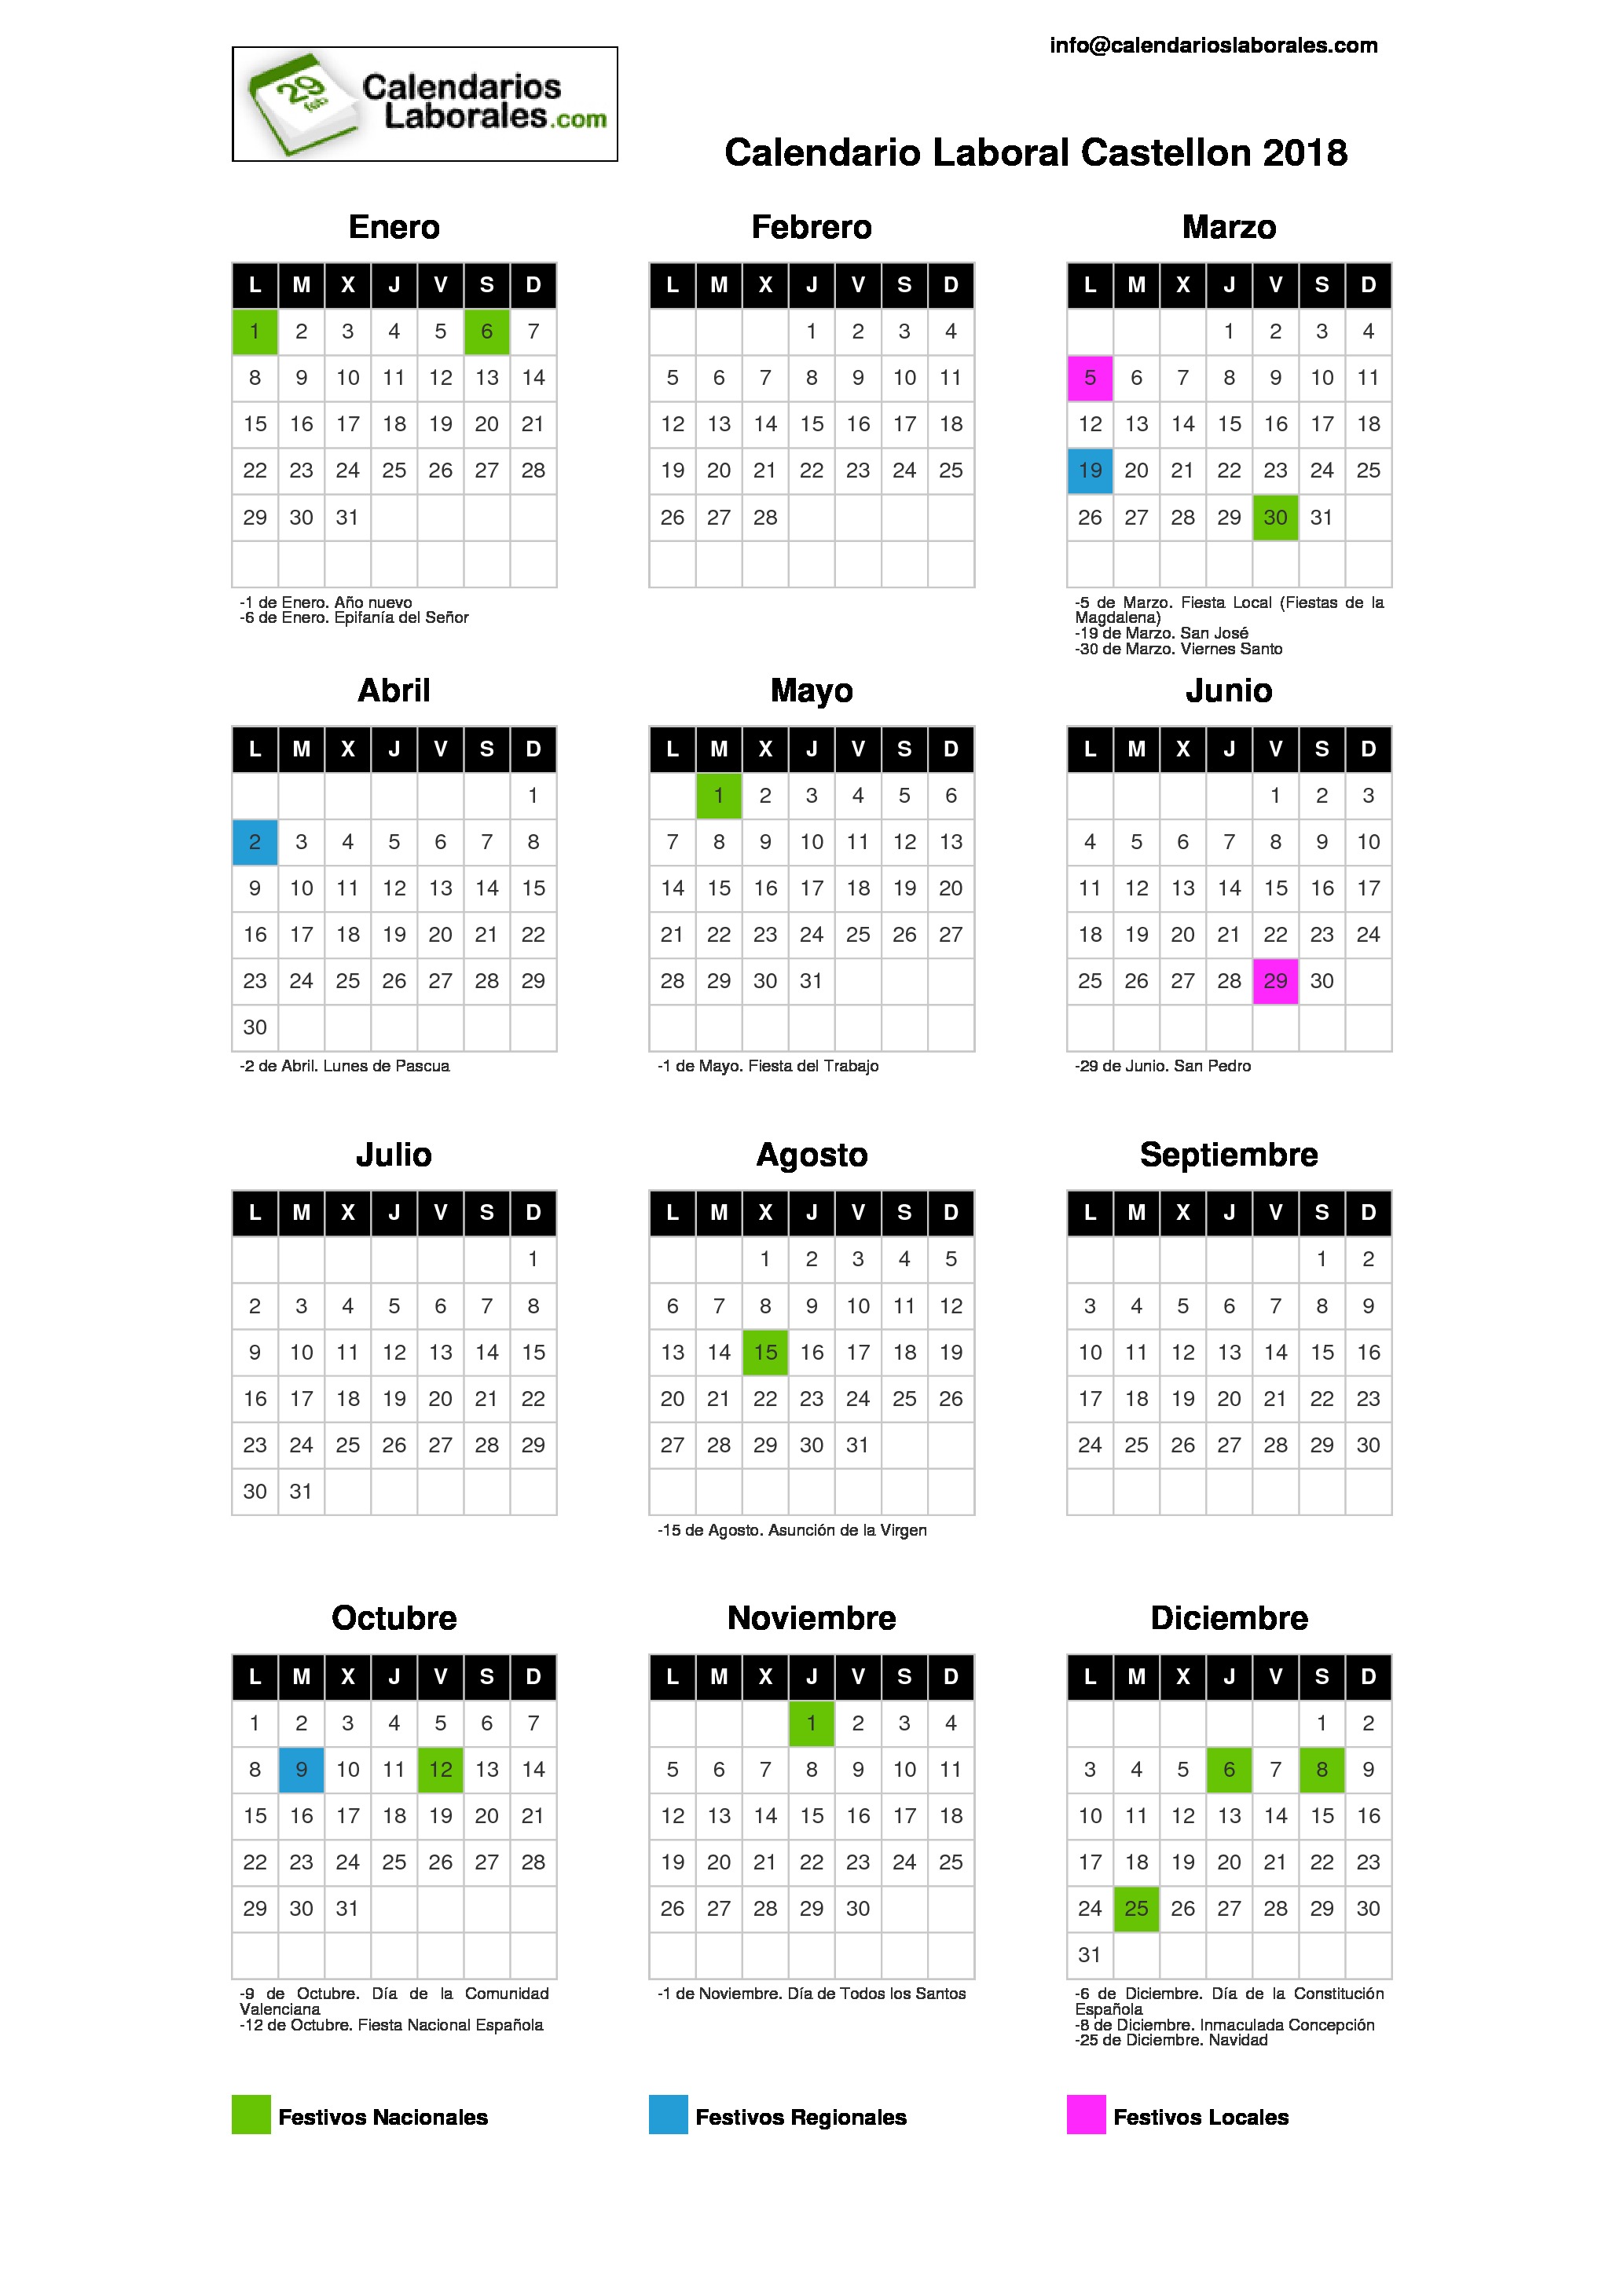 Calendario Laboral Castellón 20182067 x 2923